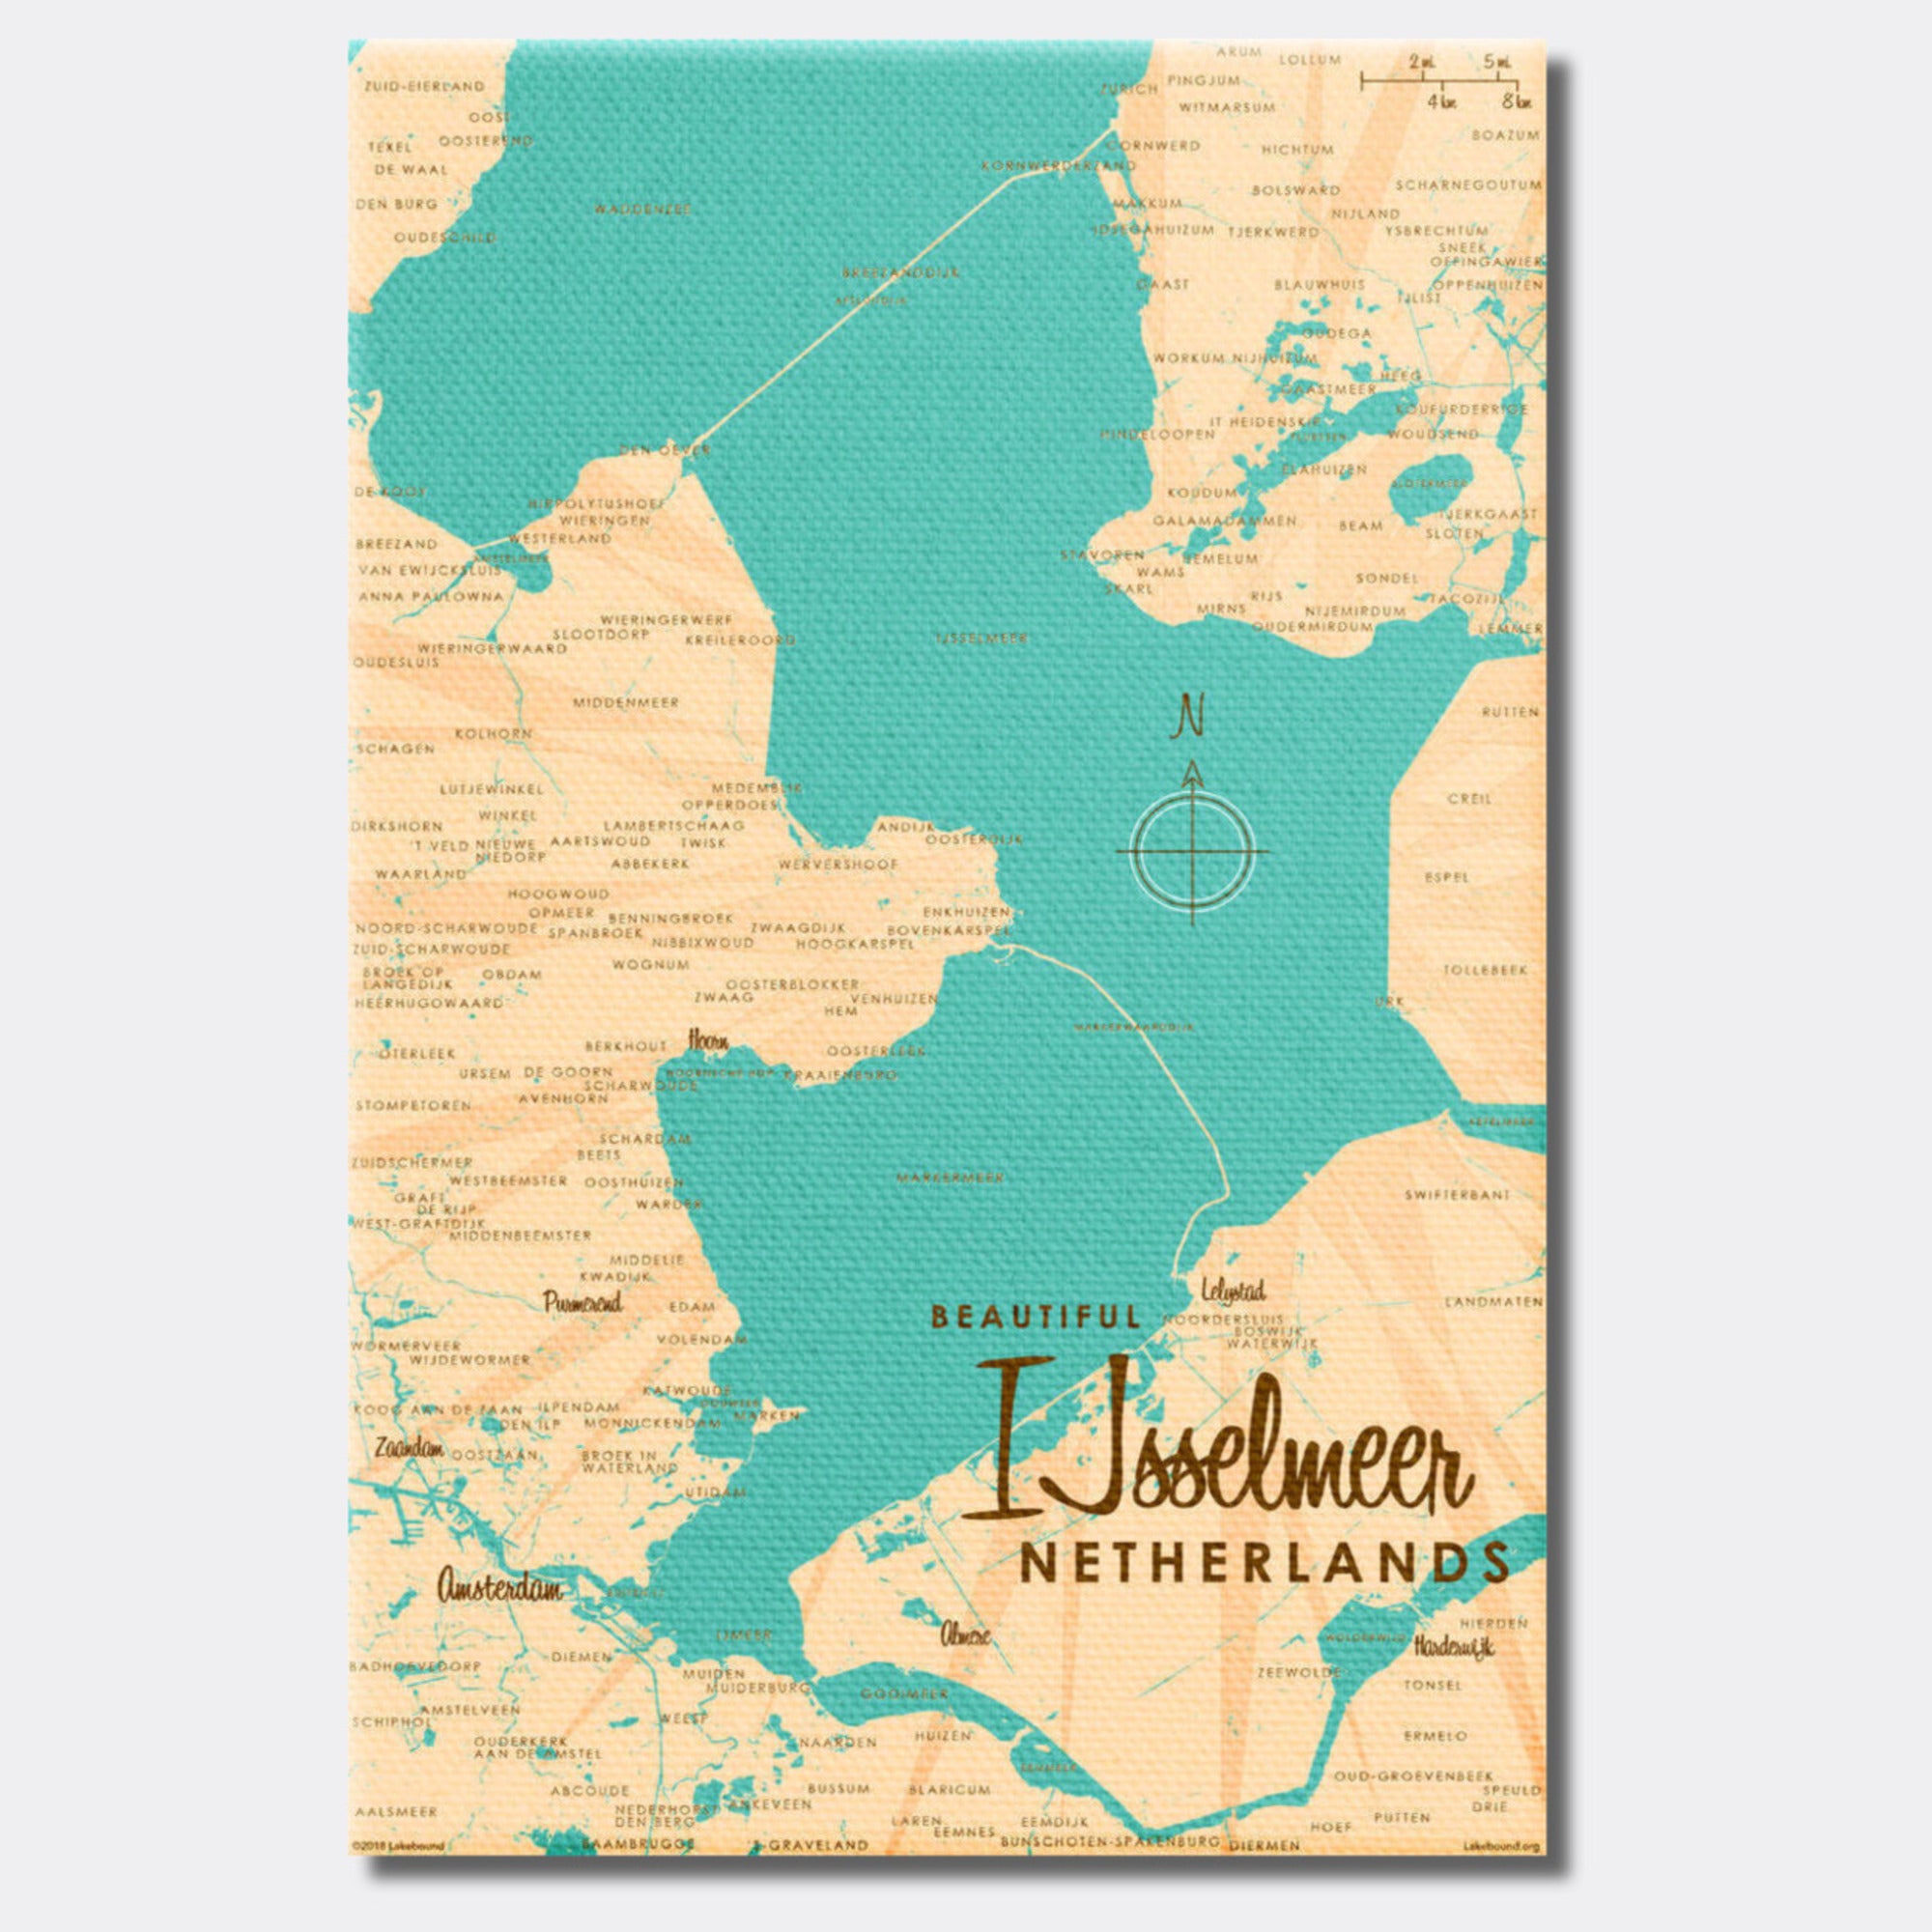 IJsselmeer Netherlands, Canvas Print